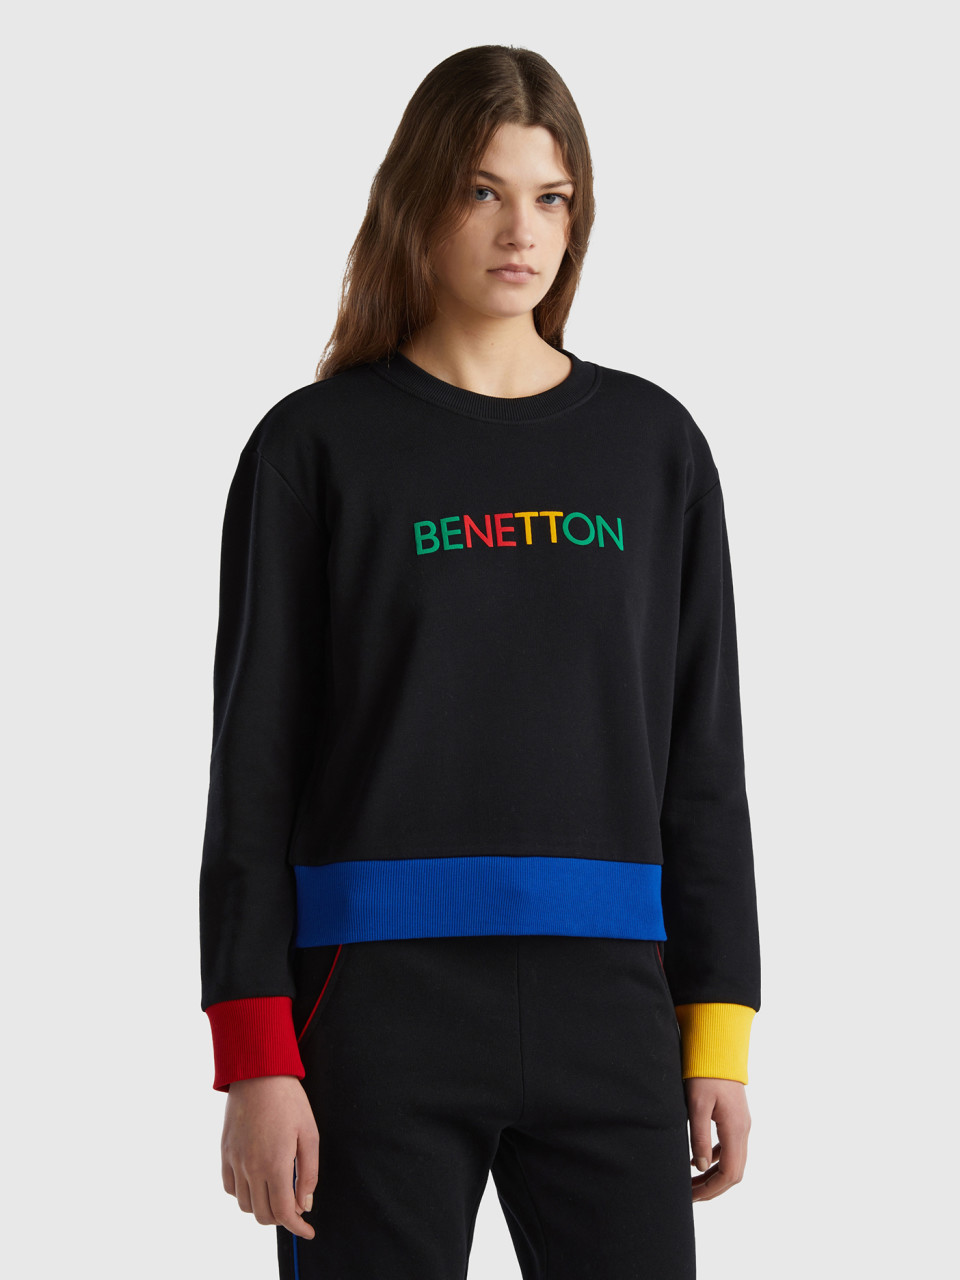 Benetton, Sudadera De 100 % Algodón Con Estampado De Logotipo, Negro, Mujer